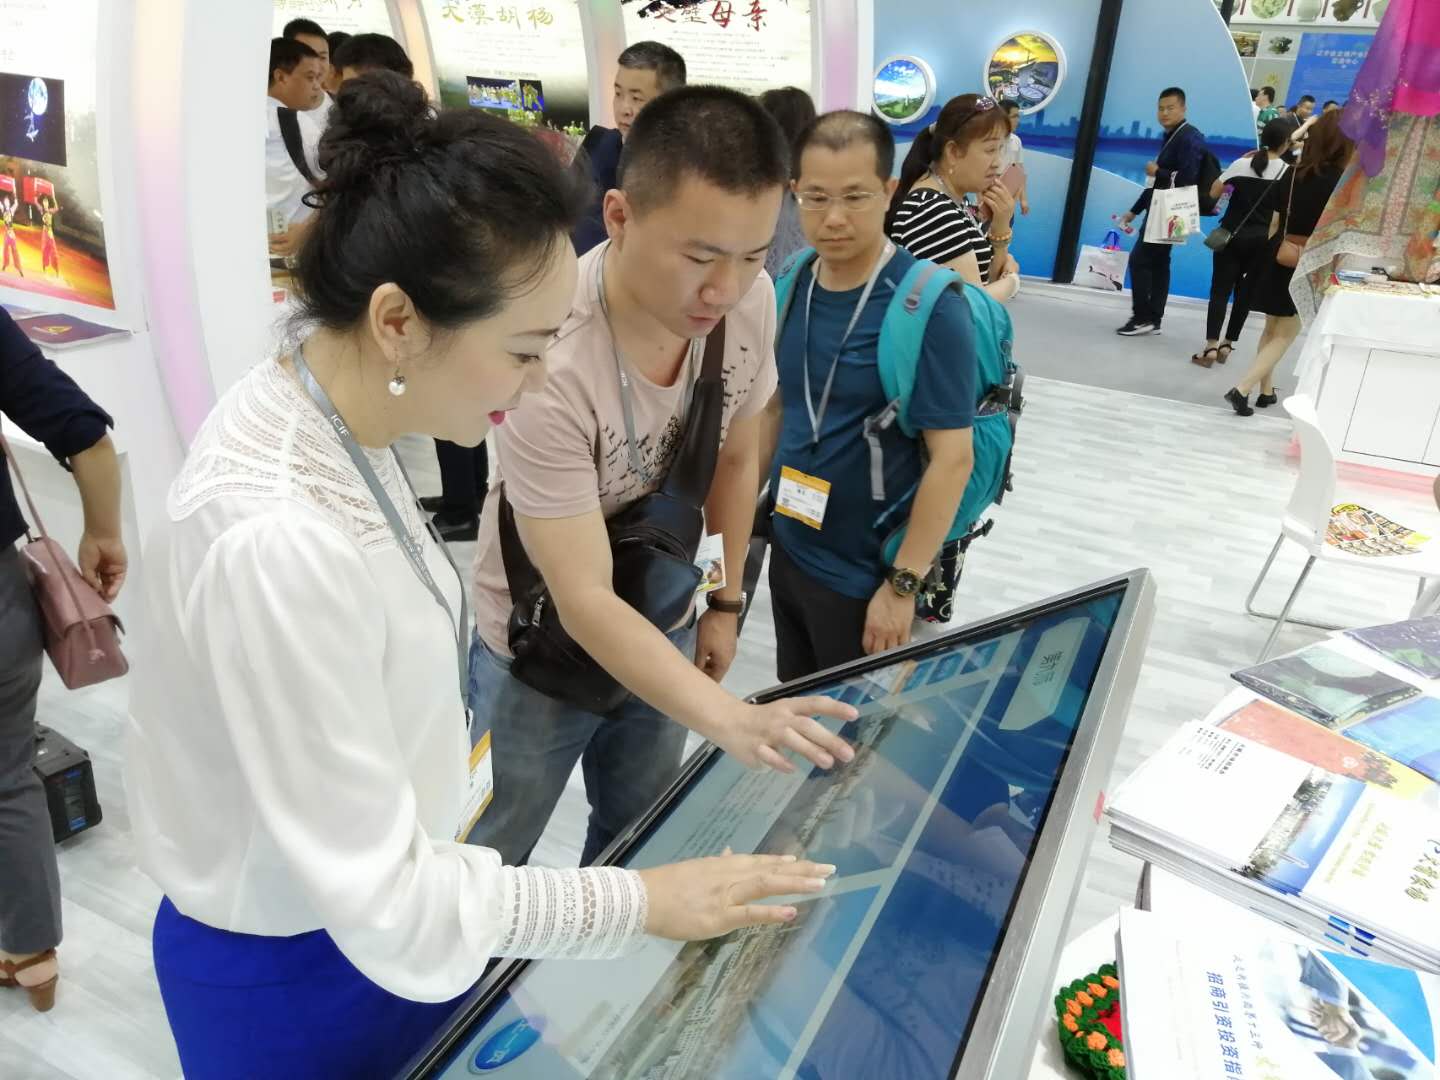 Продукция культурного туризма СПСК была представлена на выставке-ярмарке, проходящей в Шэньчжэне